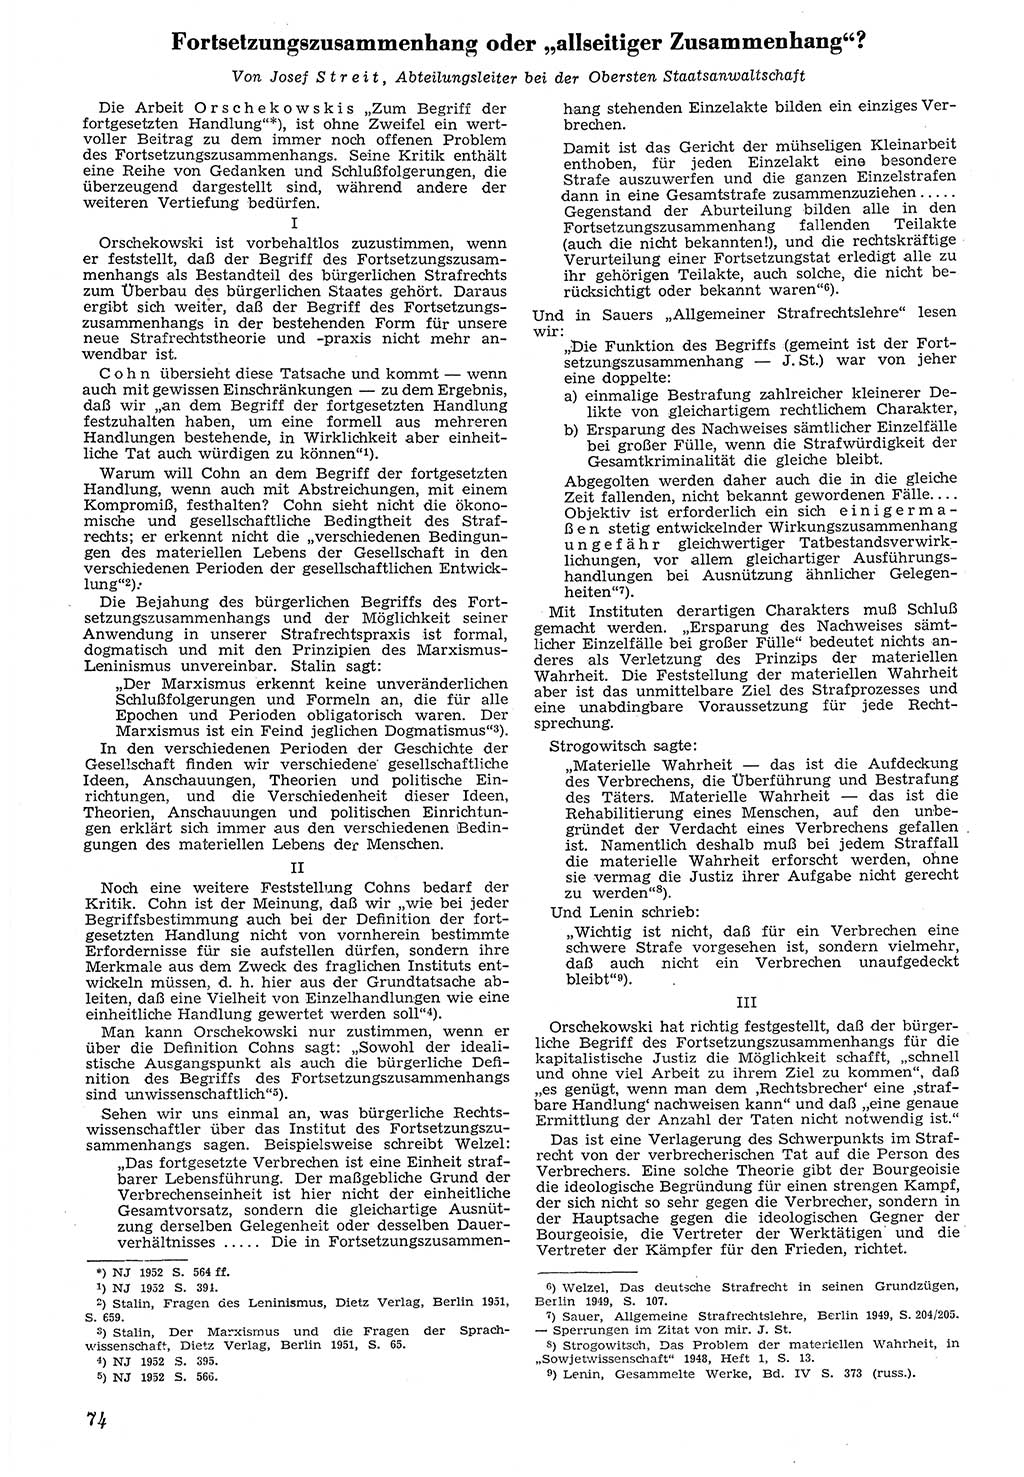 Neue Justiz (NJ), Zeitschrift für Recht und Rechtswissenschaft [Deutsche Demokratische Republik (DDR)], 7. Jahrgang 1953, Seite 74 (NJ DDR 1953, S. 74)